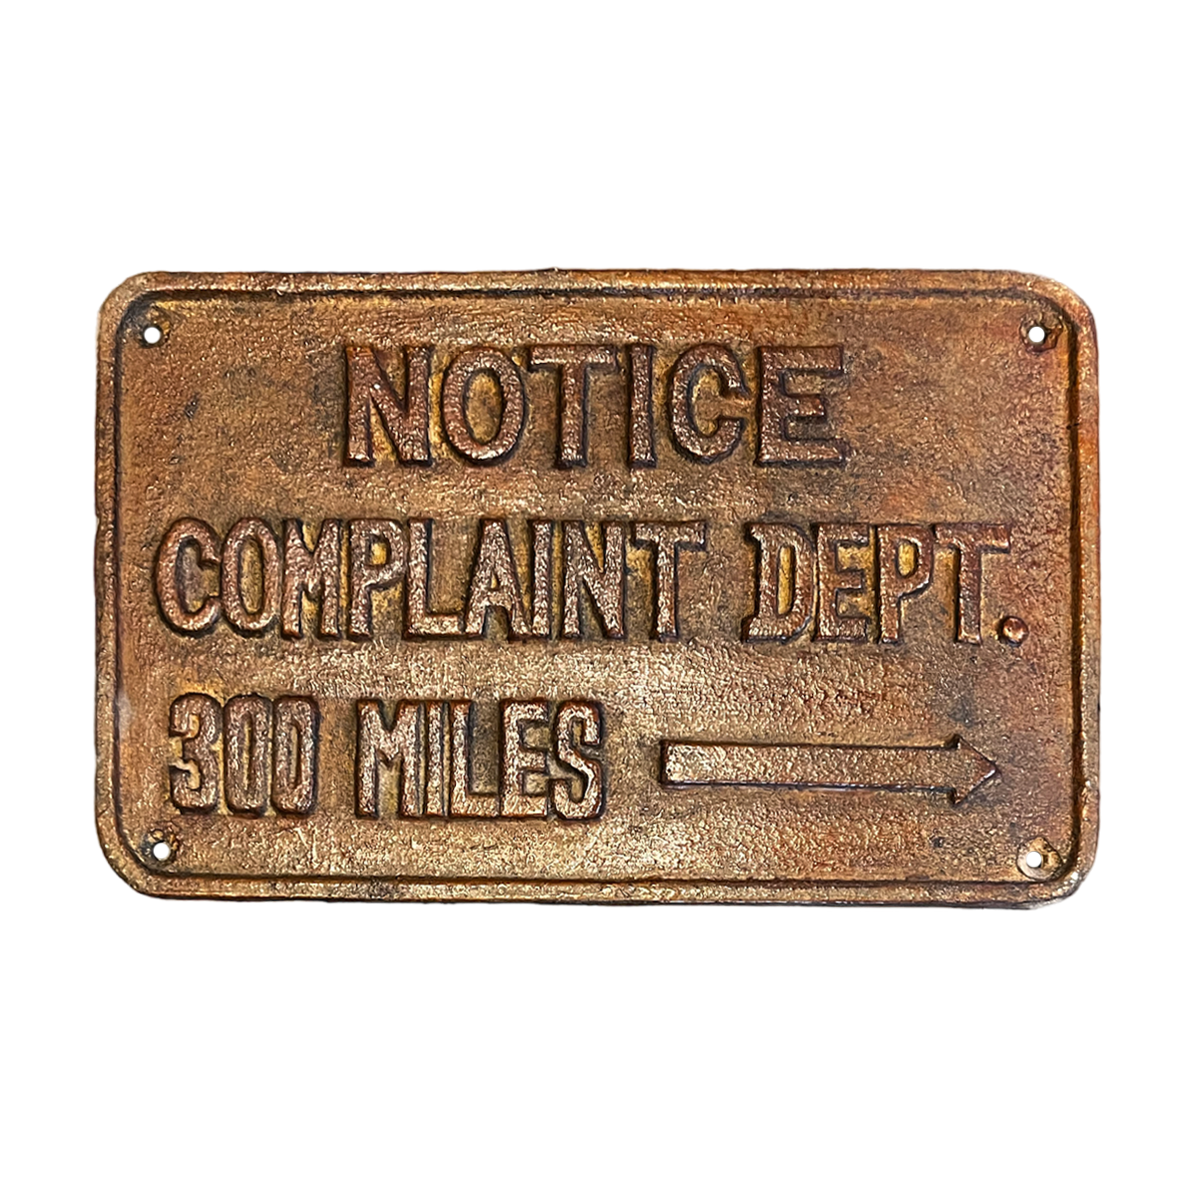 Placa "Notice complant dept."